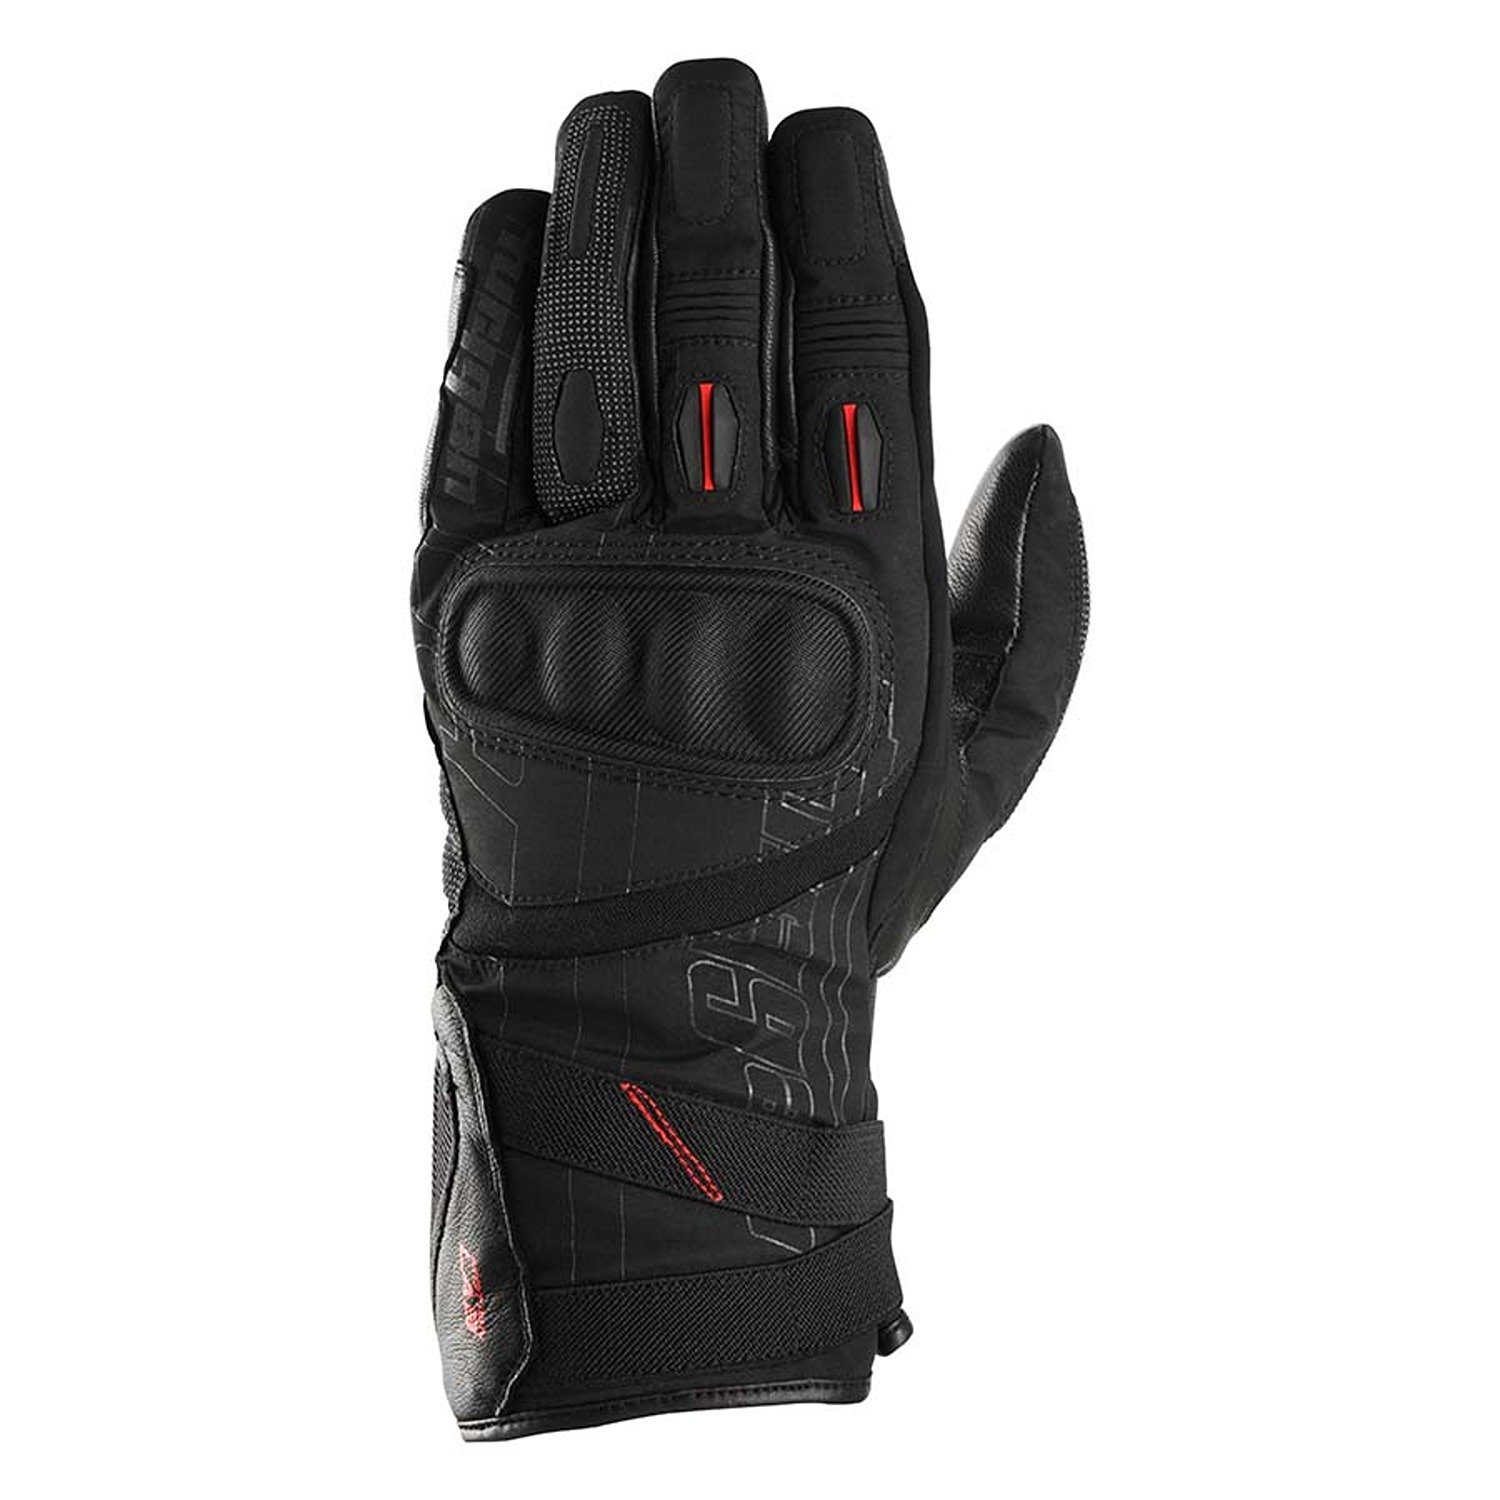 Image of Furygan Nomad Gloves Black Größe M